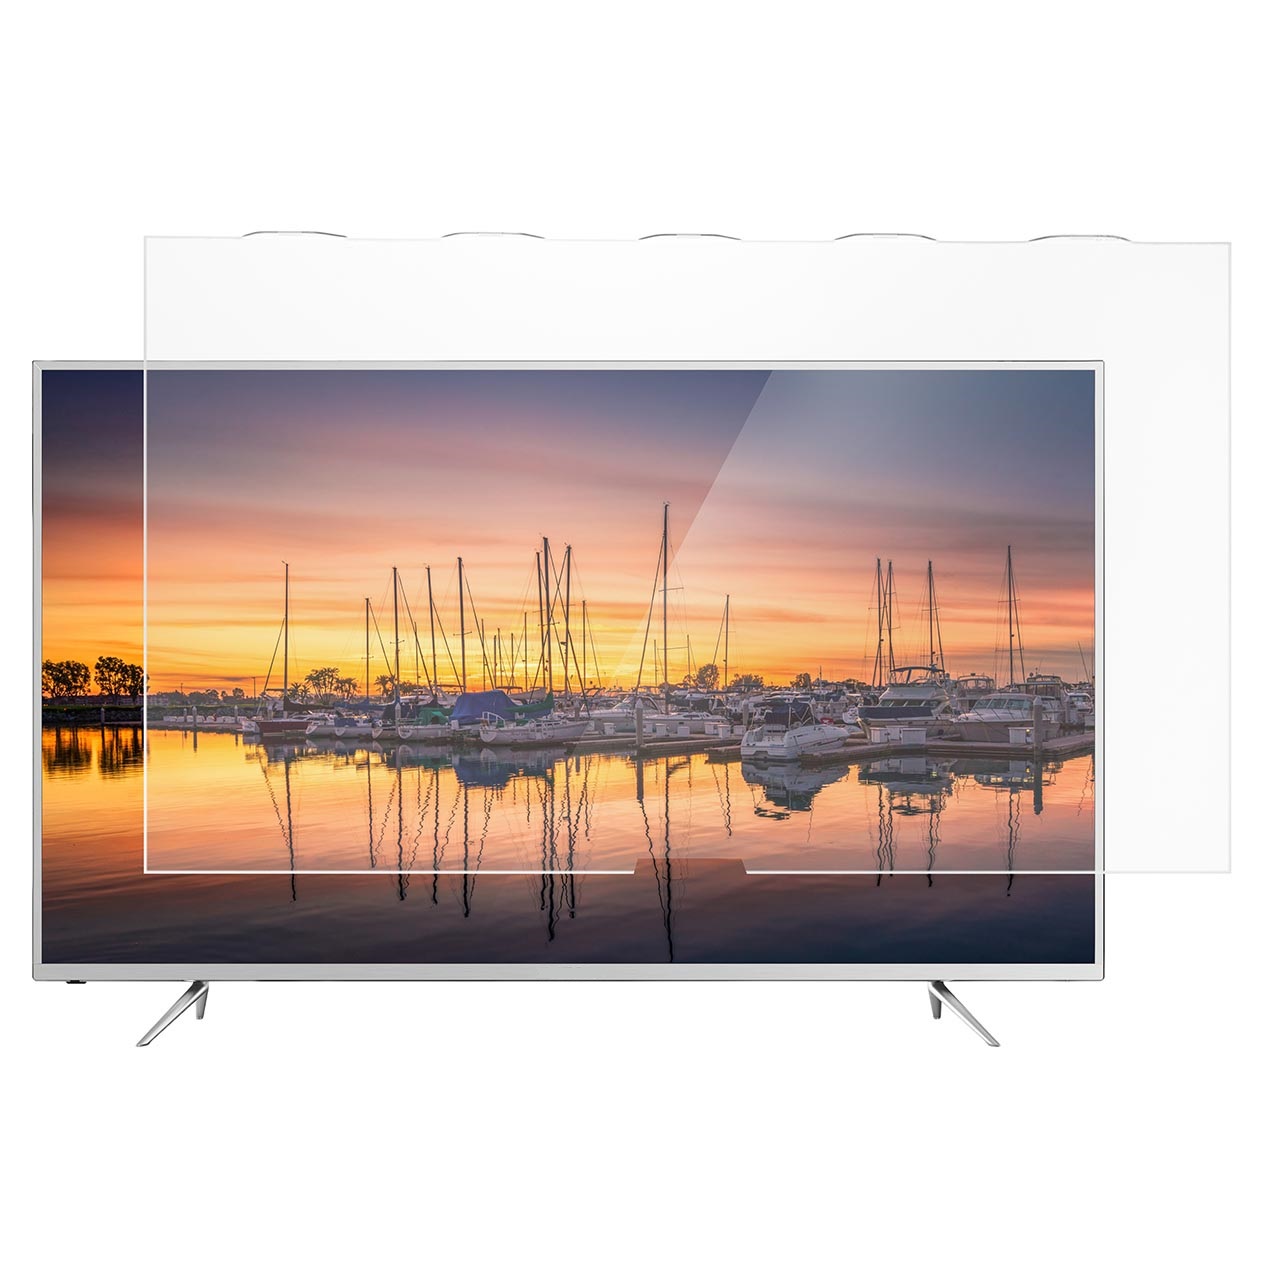 محافظ صفحه تلویزیون اس اچ  مدل S_55-6970  مناسب برای تلویزیون سامسونگ 55 اینچ مدلهای 6960-6970-6900